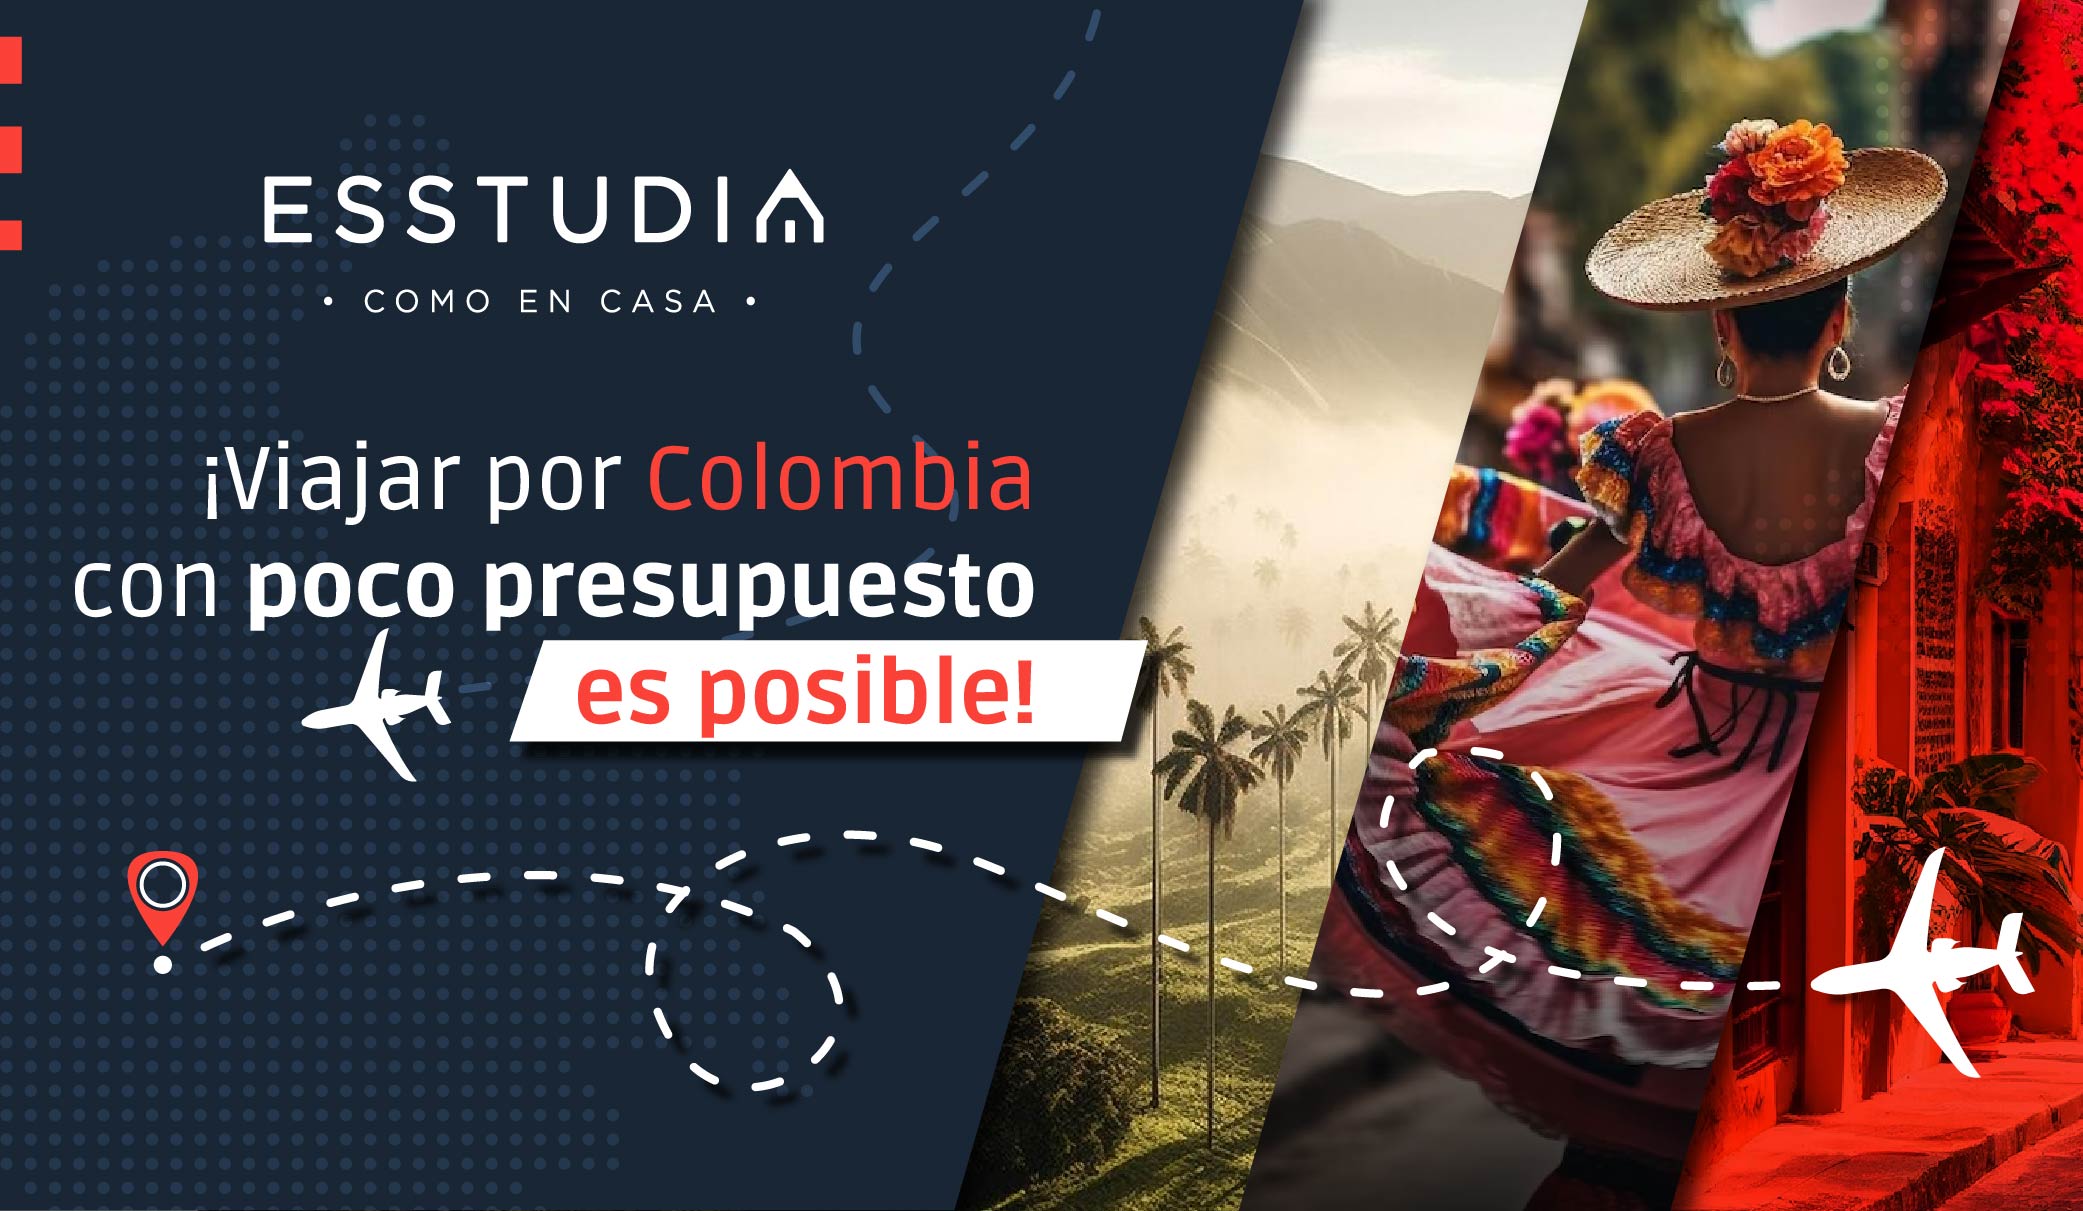 ¡Viajar por Colombia con poco presupuesto es posible!